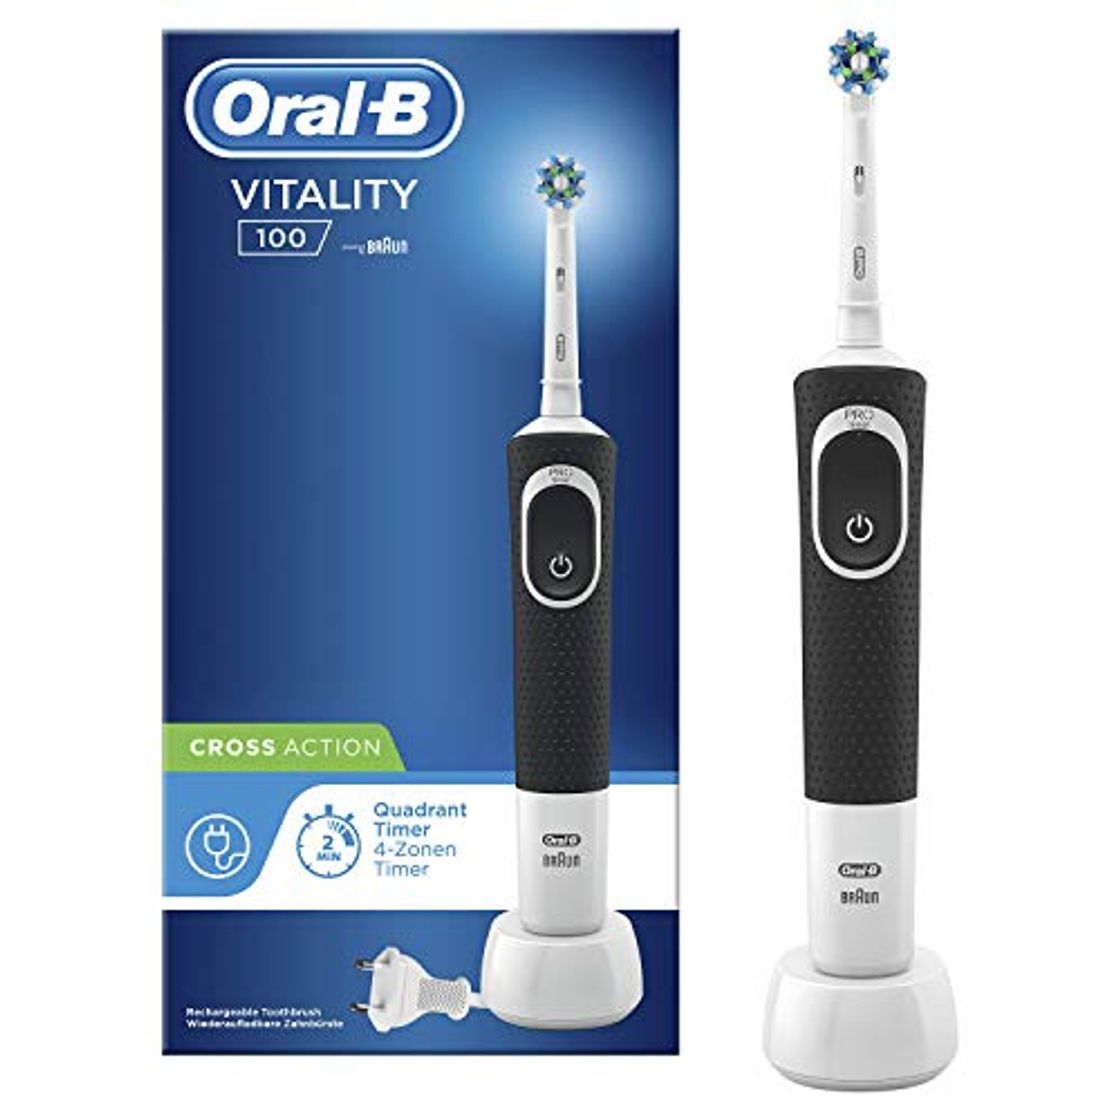 Oral-B Vitality 100 Cepillo Eléctrico Recargable con Tecnología de Braun